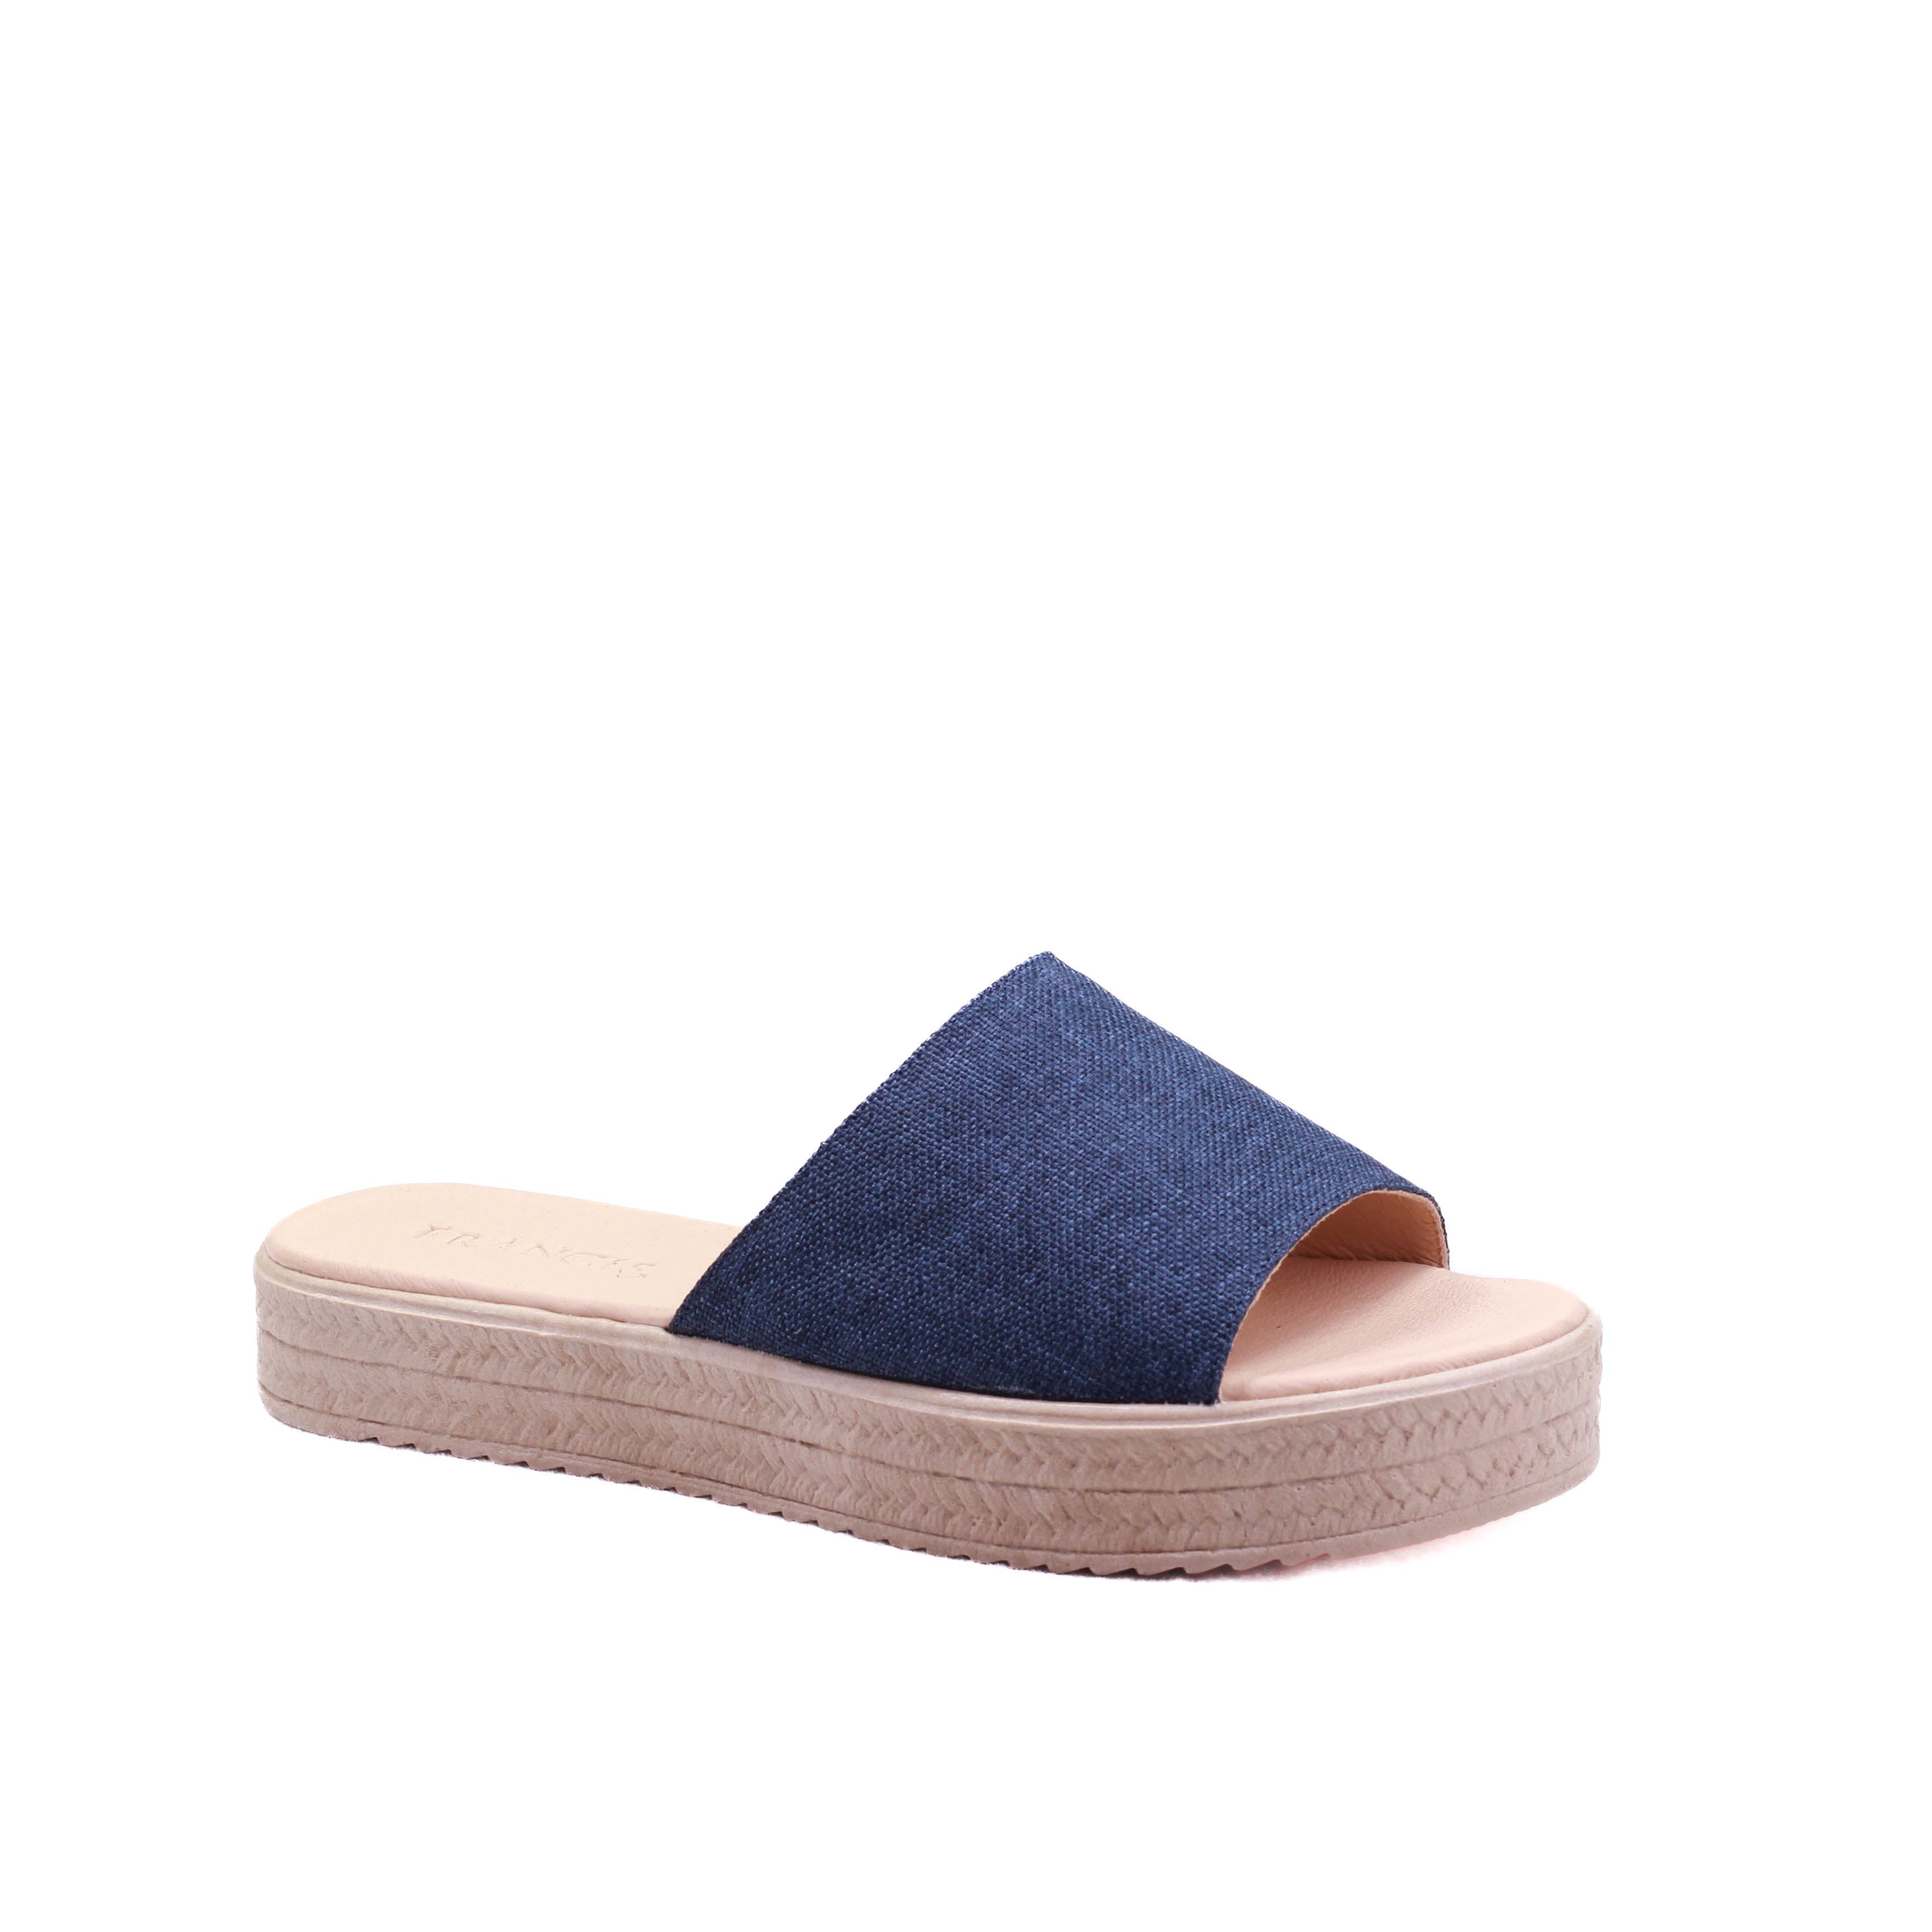 Alpargata tipo sandalia para dama de plataforma tejida